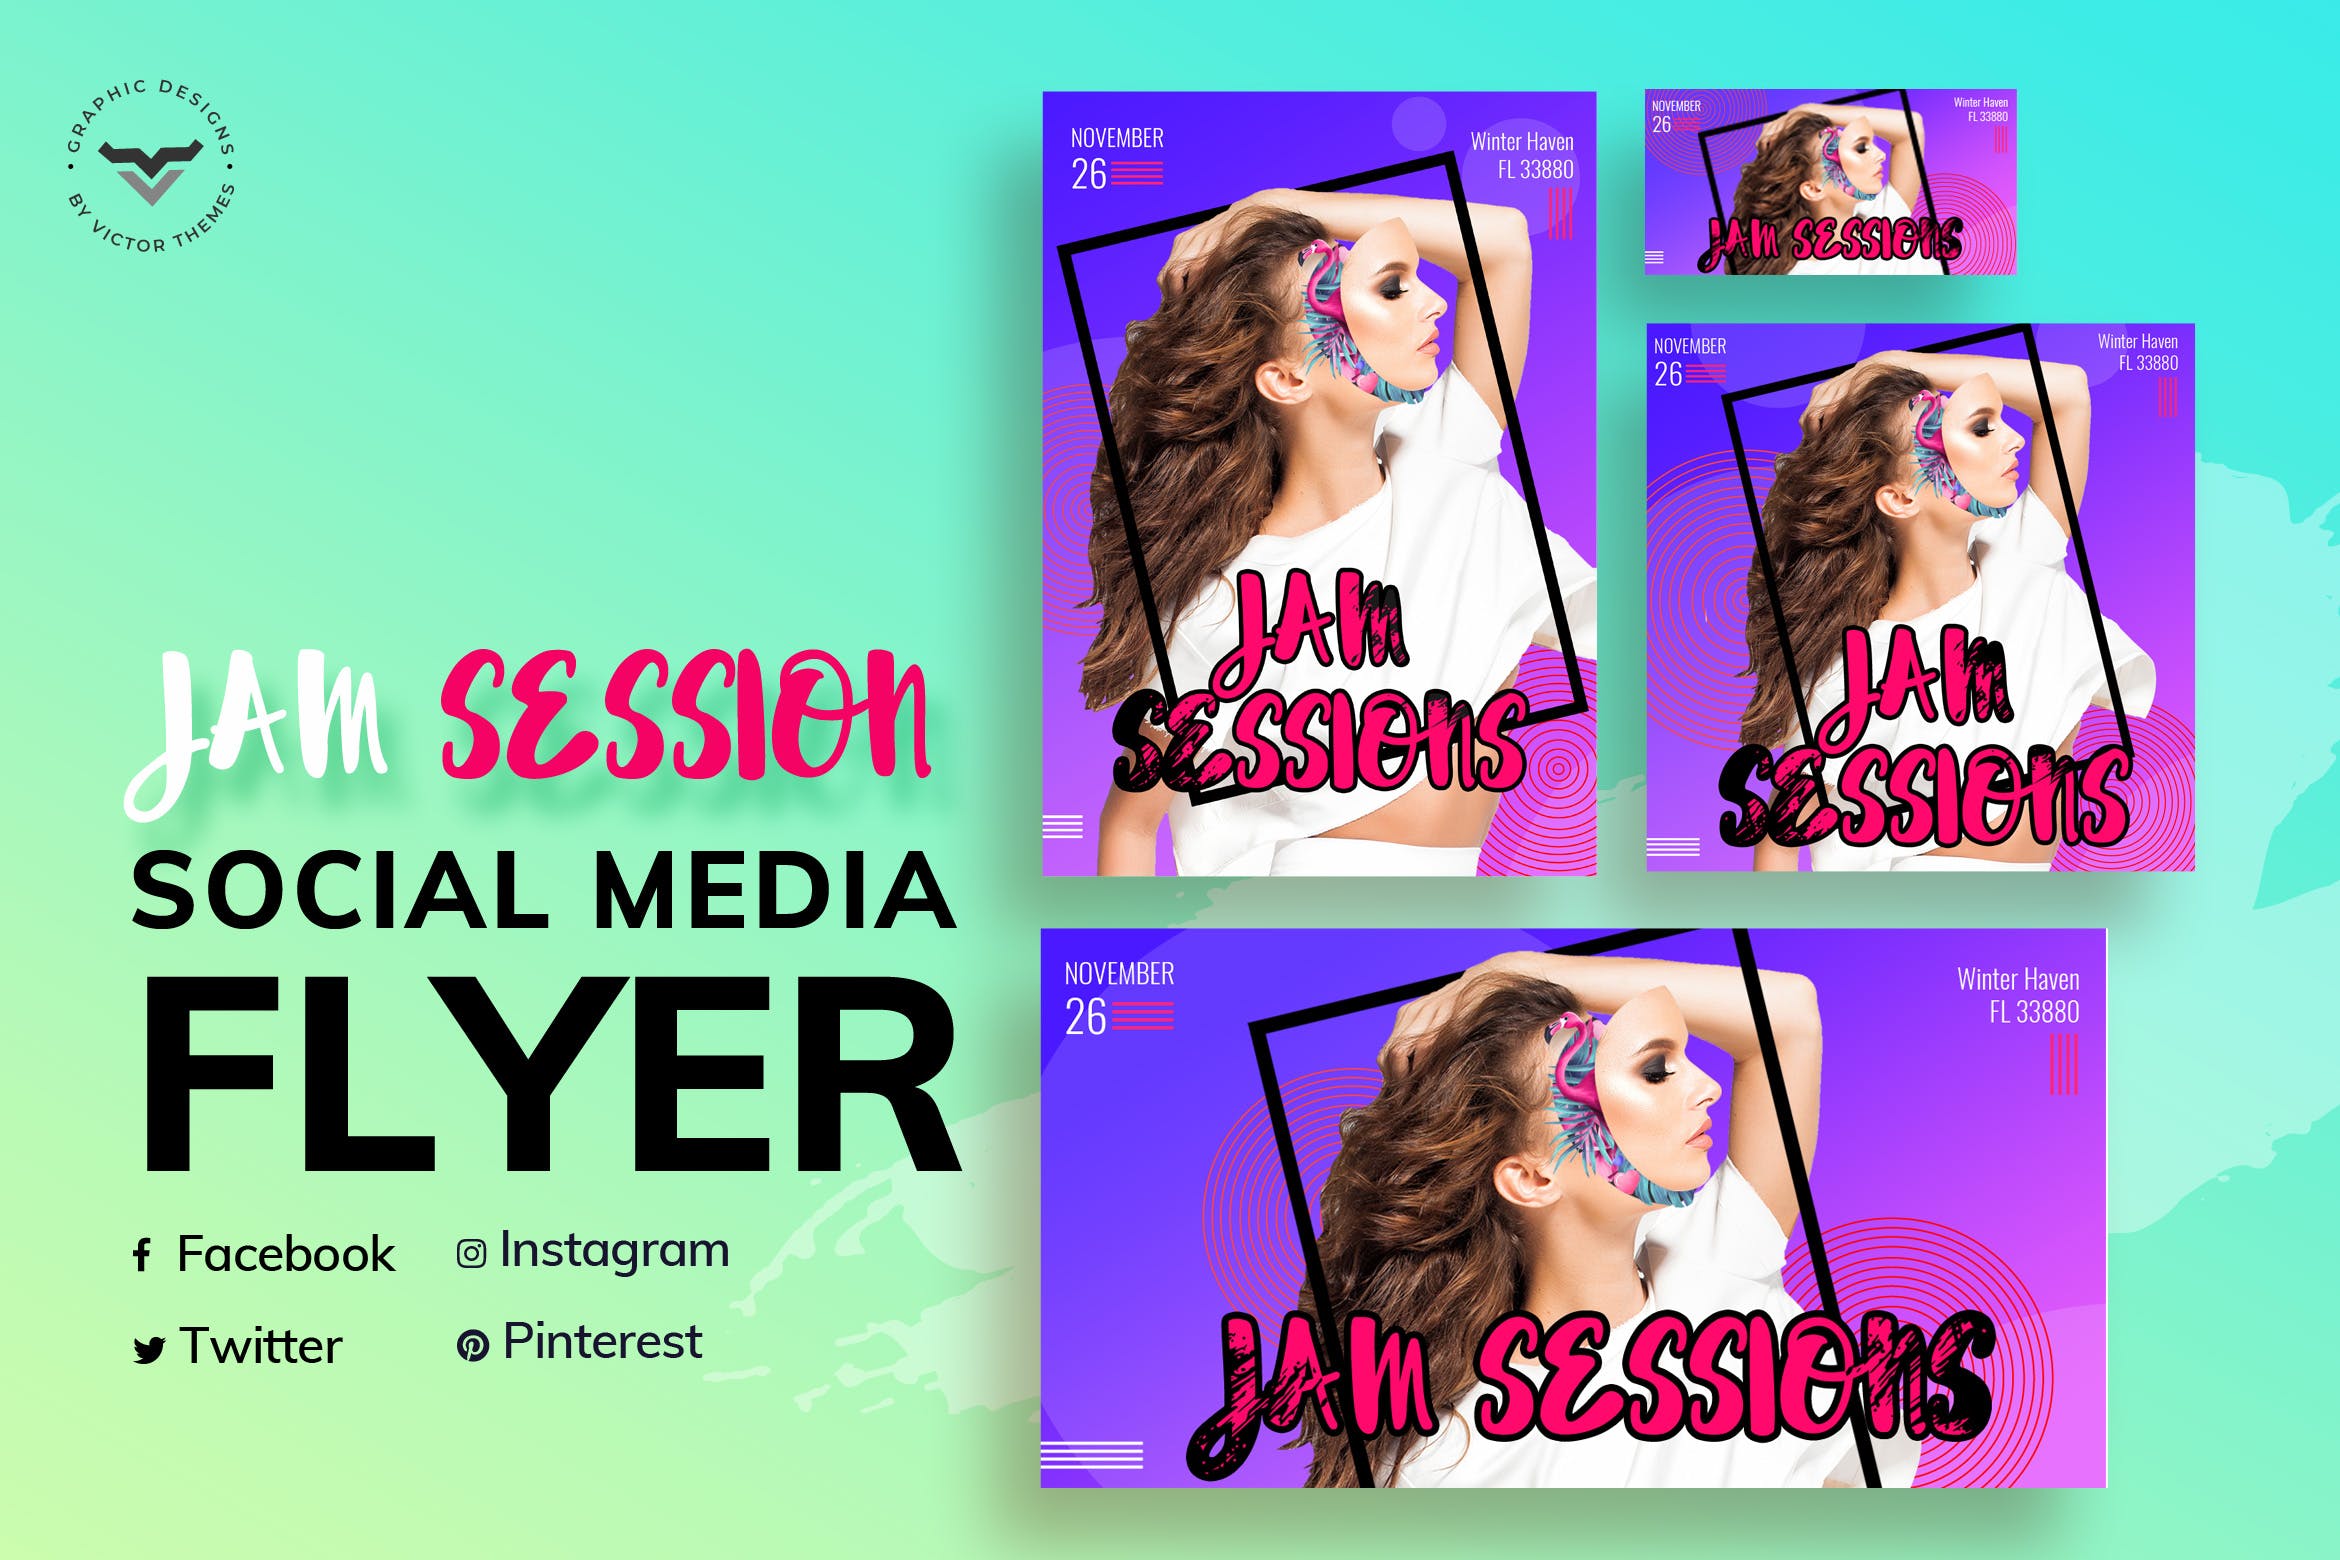 时尚大促销活动社交媒体广告贴图设计模板 Jas Session Fashion Social Media Templates设计素材模板